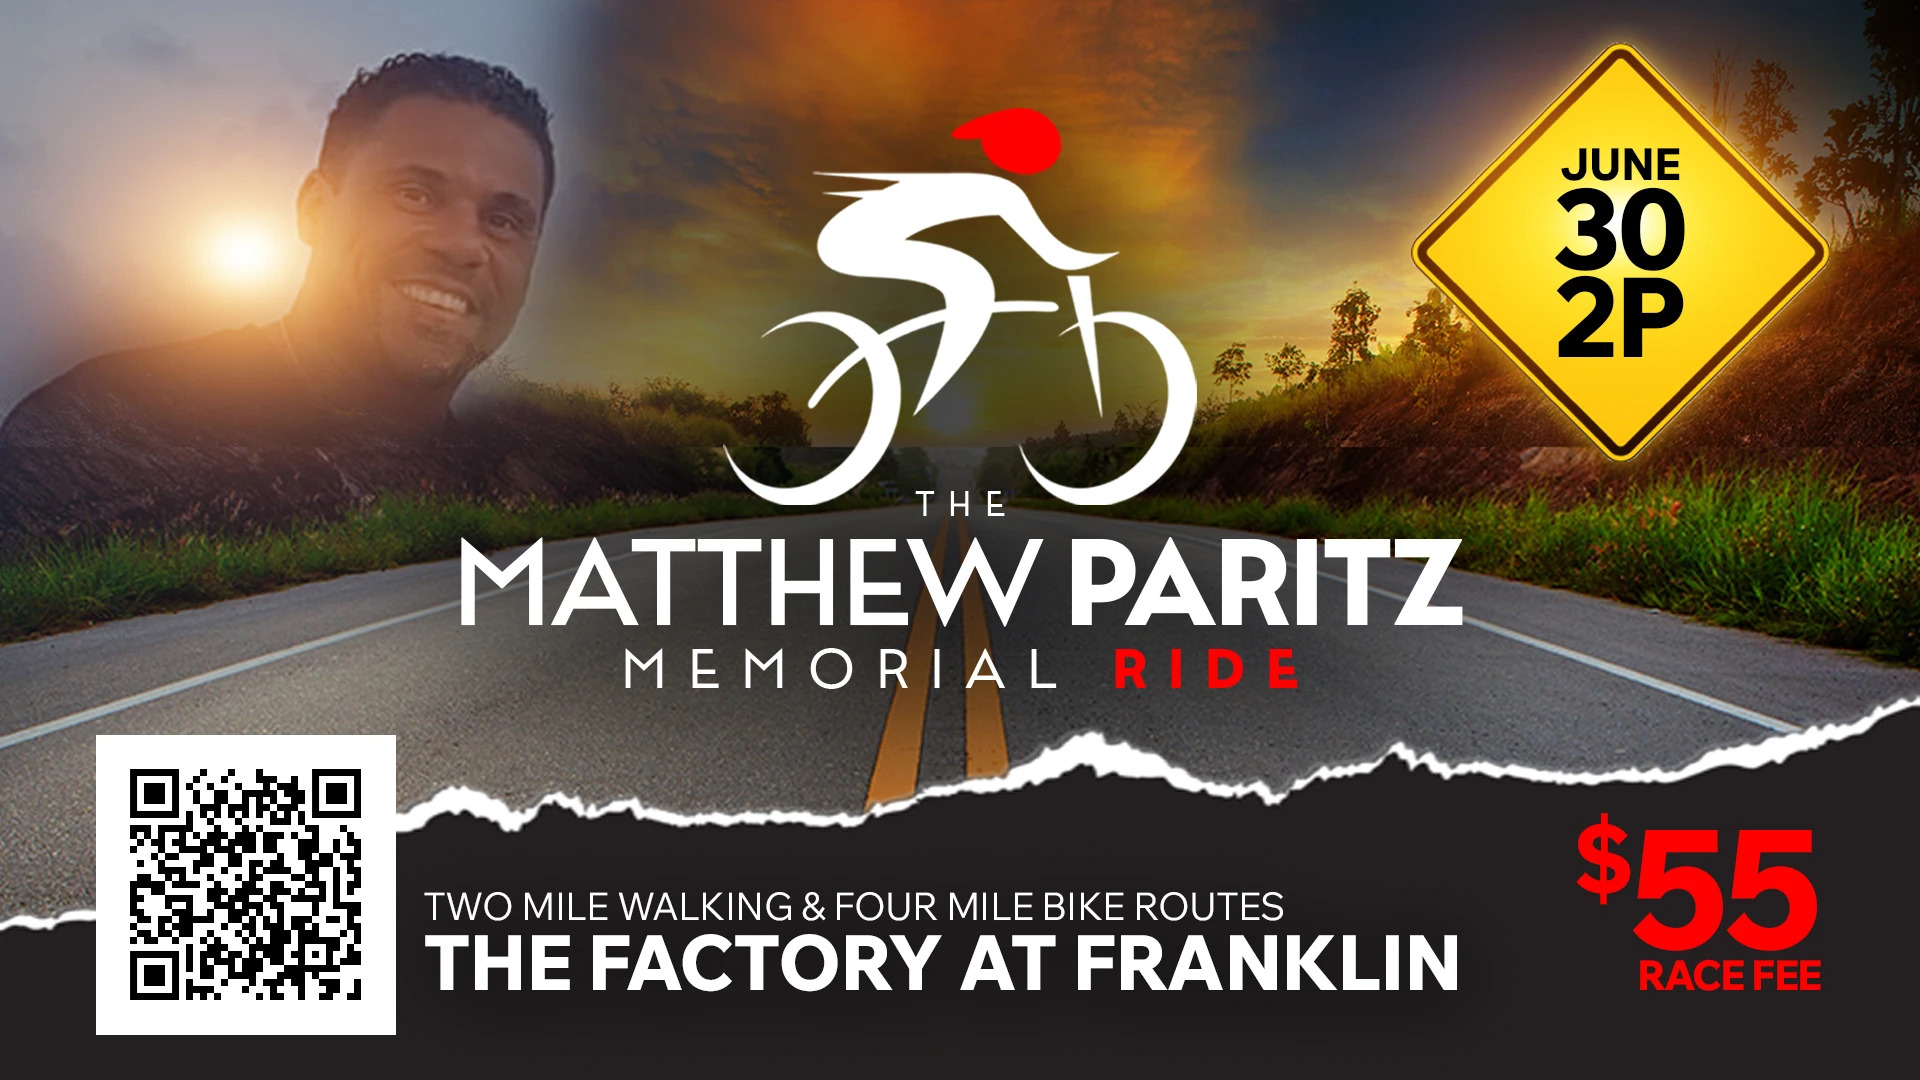 Matthew Paritz Memorial Ride